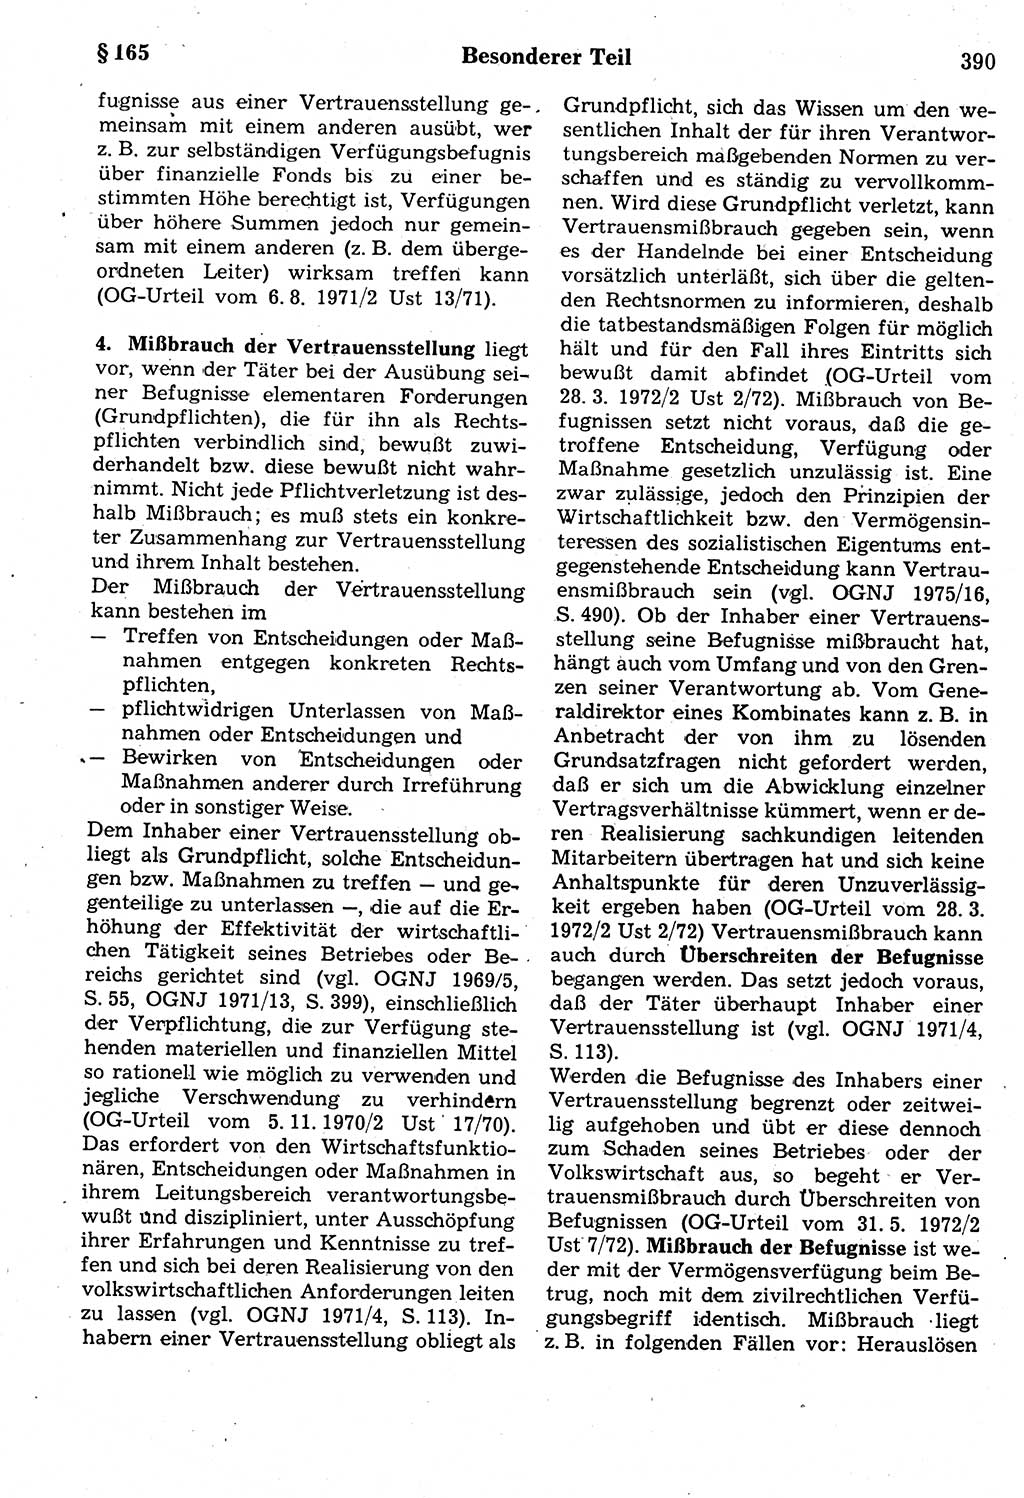 Strafrecht der Deutschen Demokratischen Republik (DDR), Kommentar zum Strafgesetzbuch (StGB) 1987, Seite 390 (Strafr. DDR Komm. StGB 1987, S. 390)